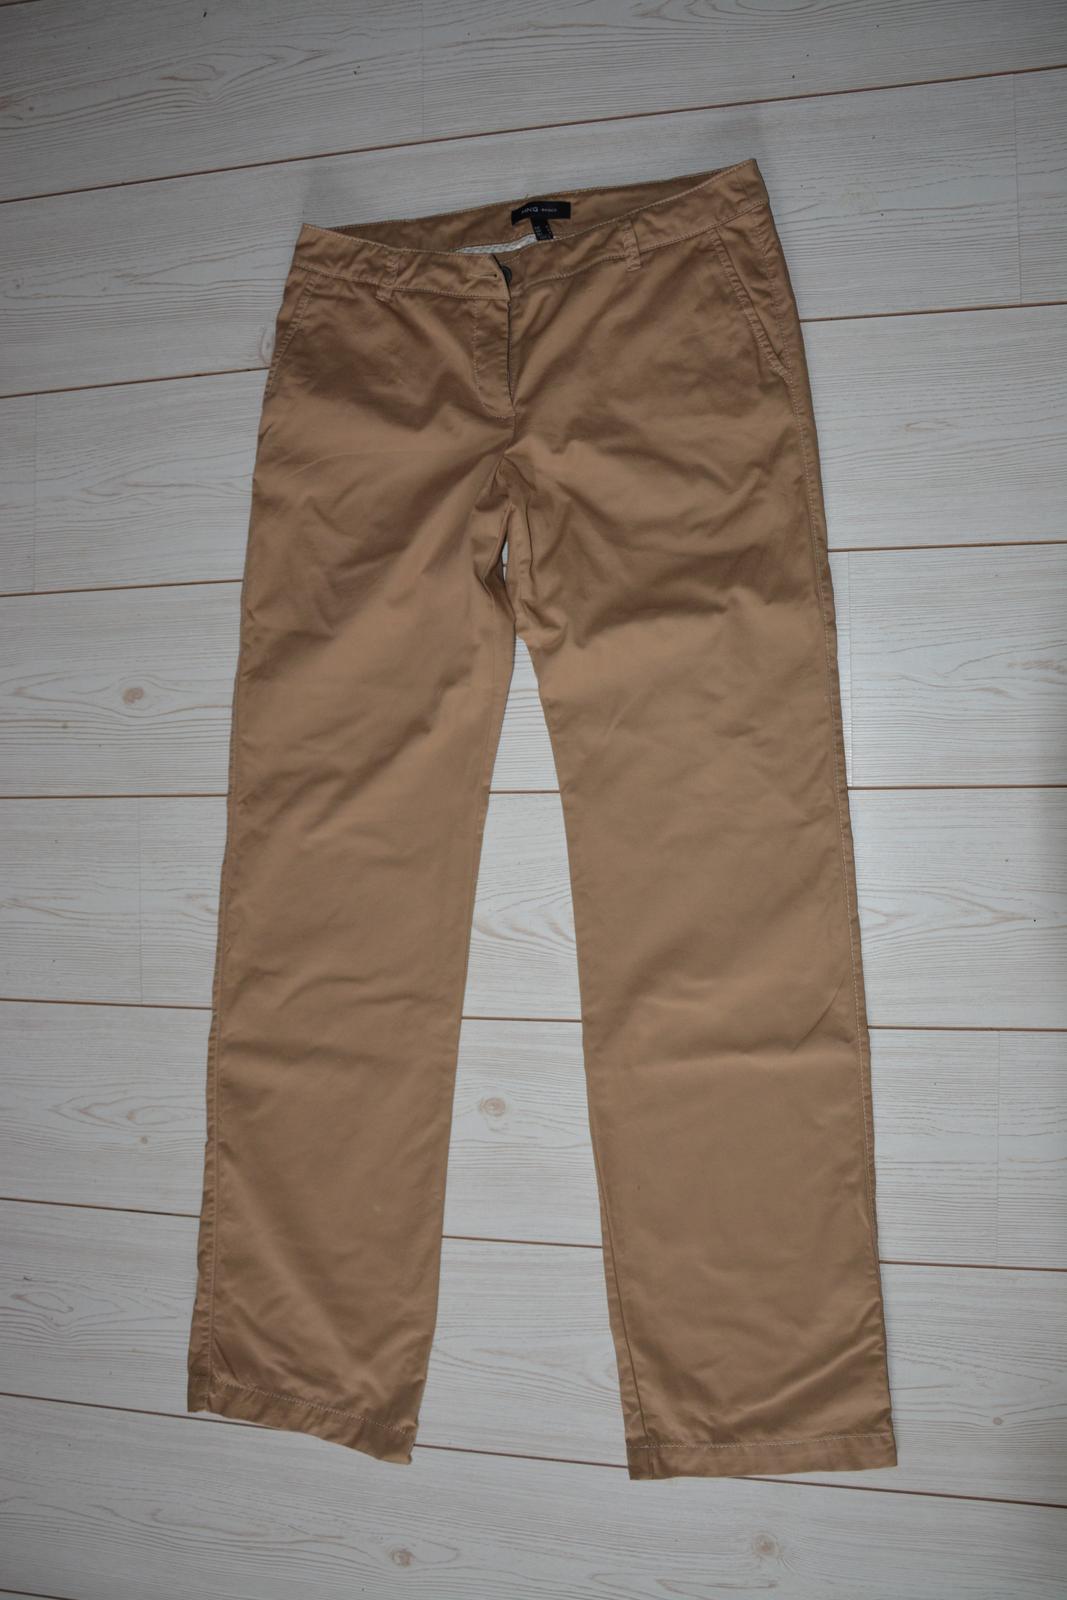 Béžové kalhoty - Obrázek č. 2